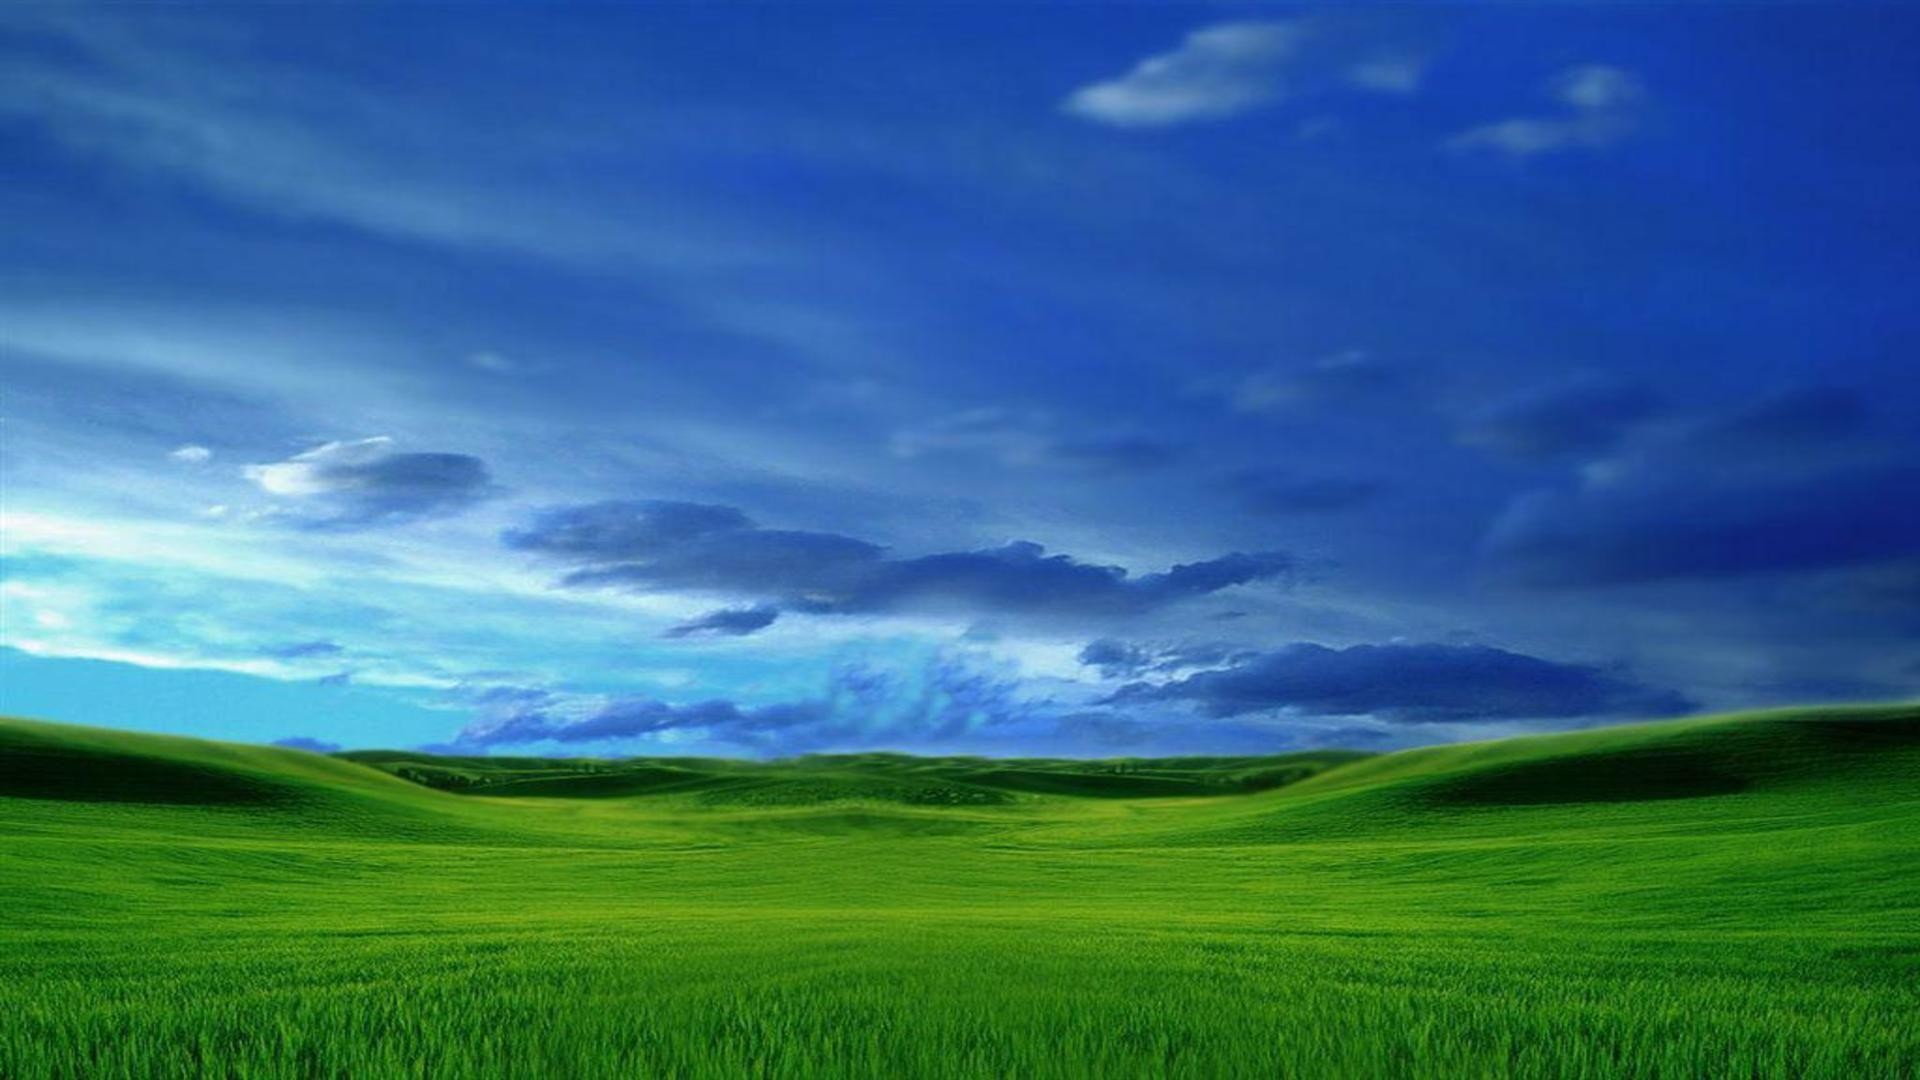 Hình nền máy tính Microsoft - Khám phá thế giới của hình nền máy tính Microsoft đẹp nhất và độc đáo nhất. Với các hình ảnh tuyệt đẹp về thiên nhiên và các đô thị, bộ sưu tập này sẽ khiến cho màn hình máy tính của bạn trở nên thú vị và đầy màu sắc.